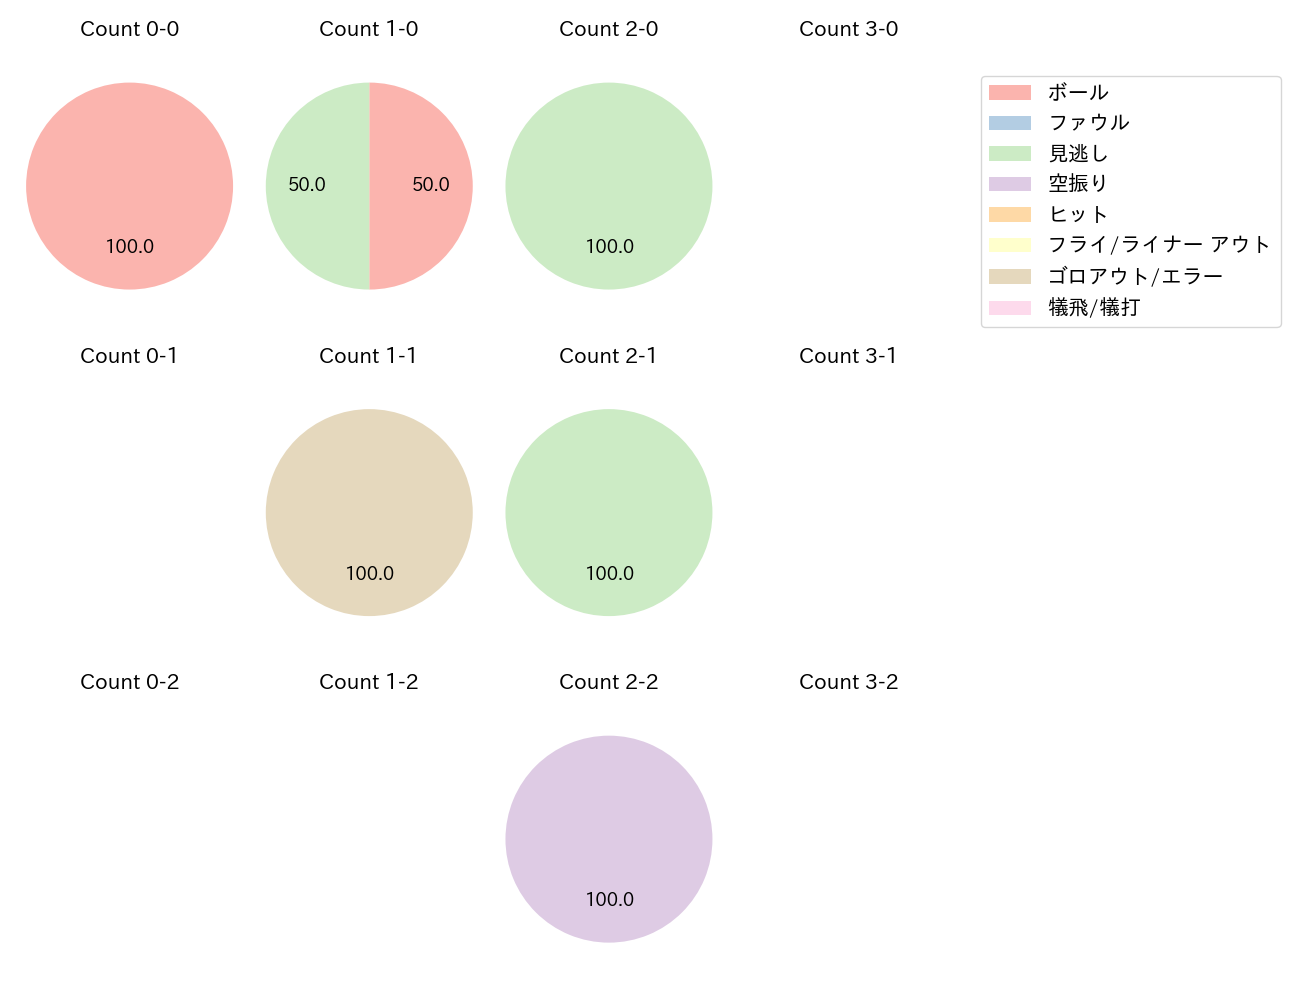 笠原 祥太郎の球数分布(2021年10月)